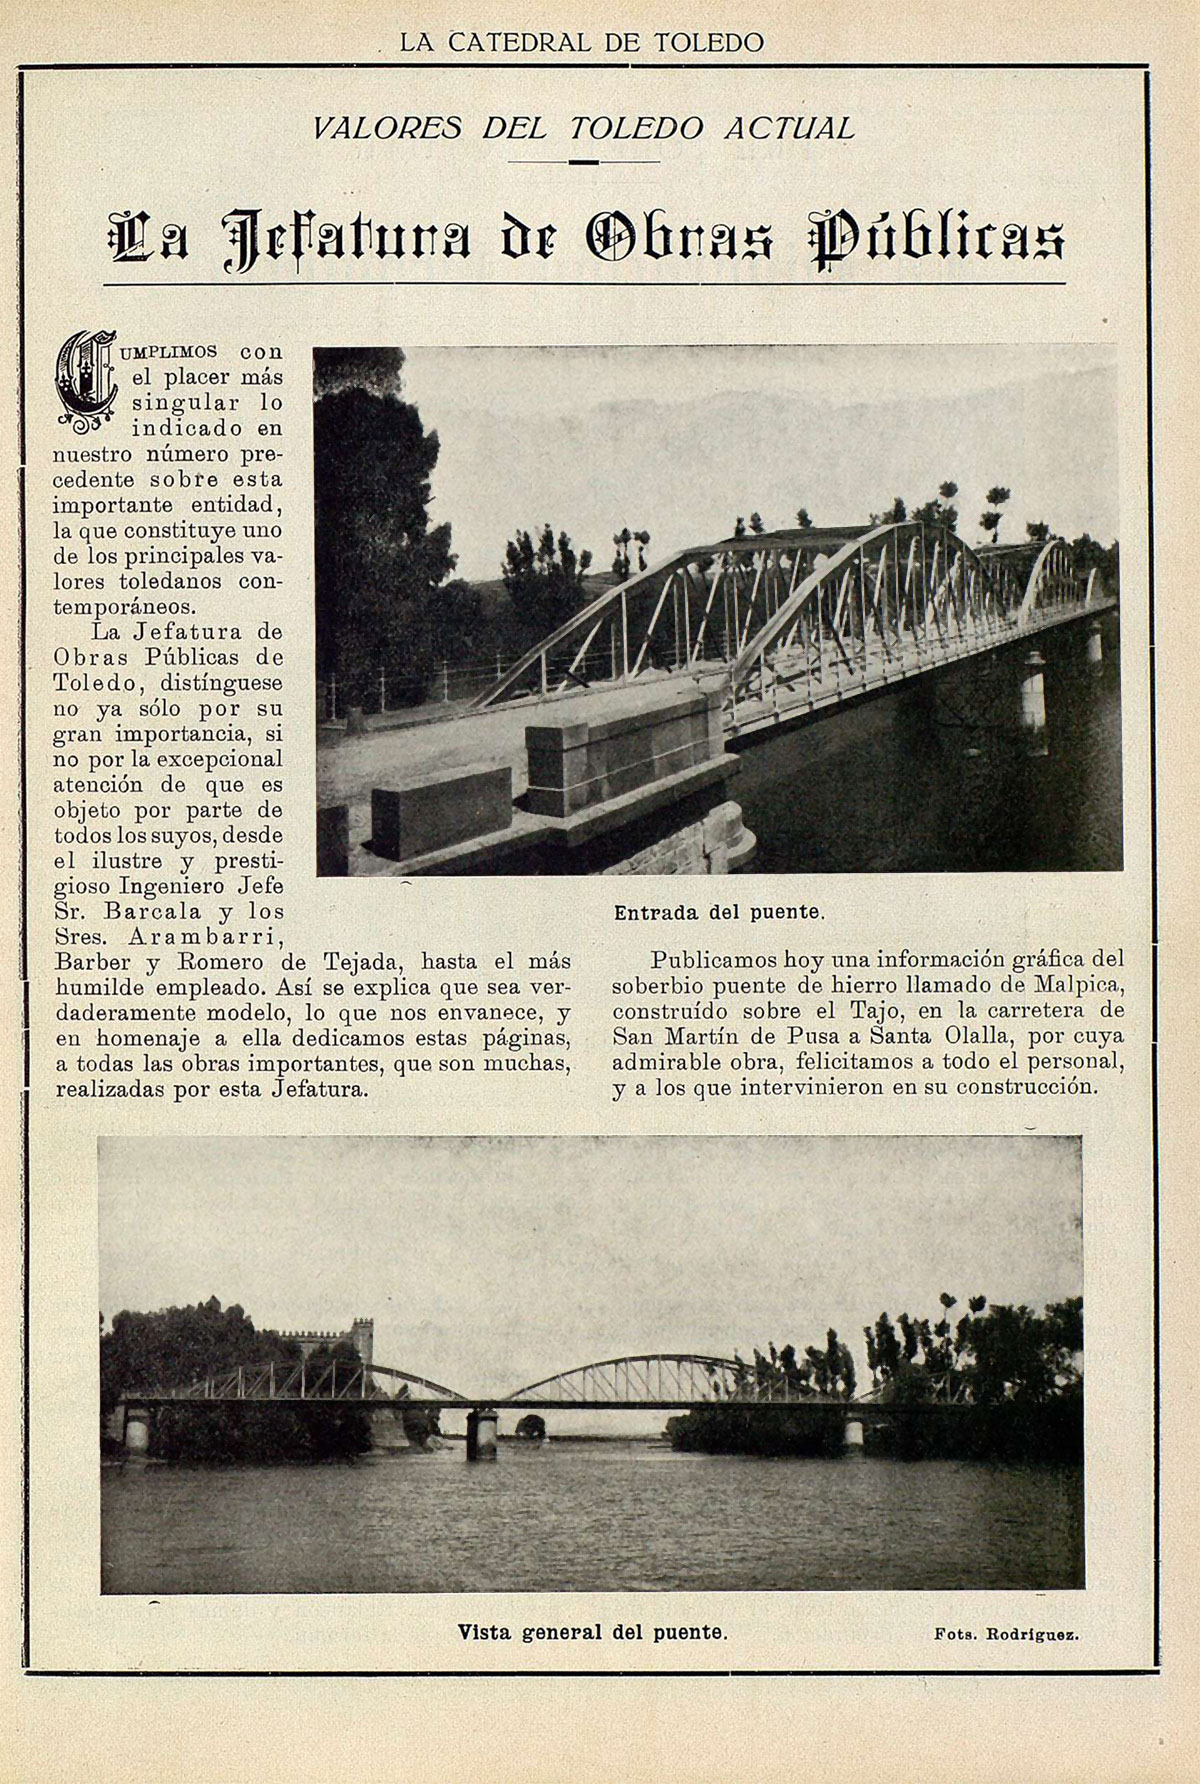 El puente de hierro original de Malpica de Tajo. La Catedral de Toledo n.º 3, agosto de 1925